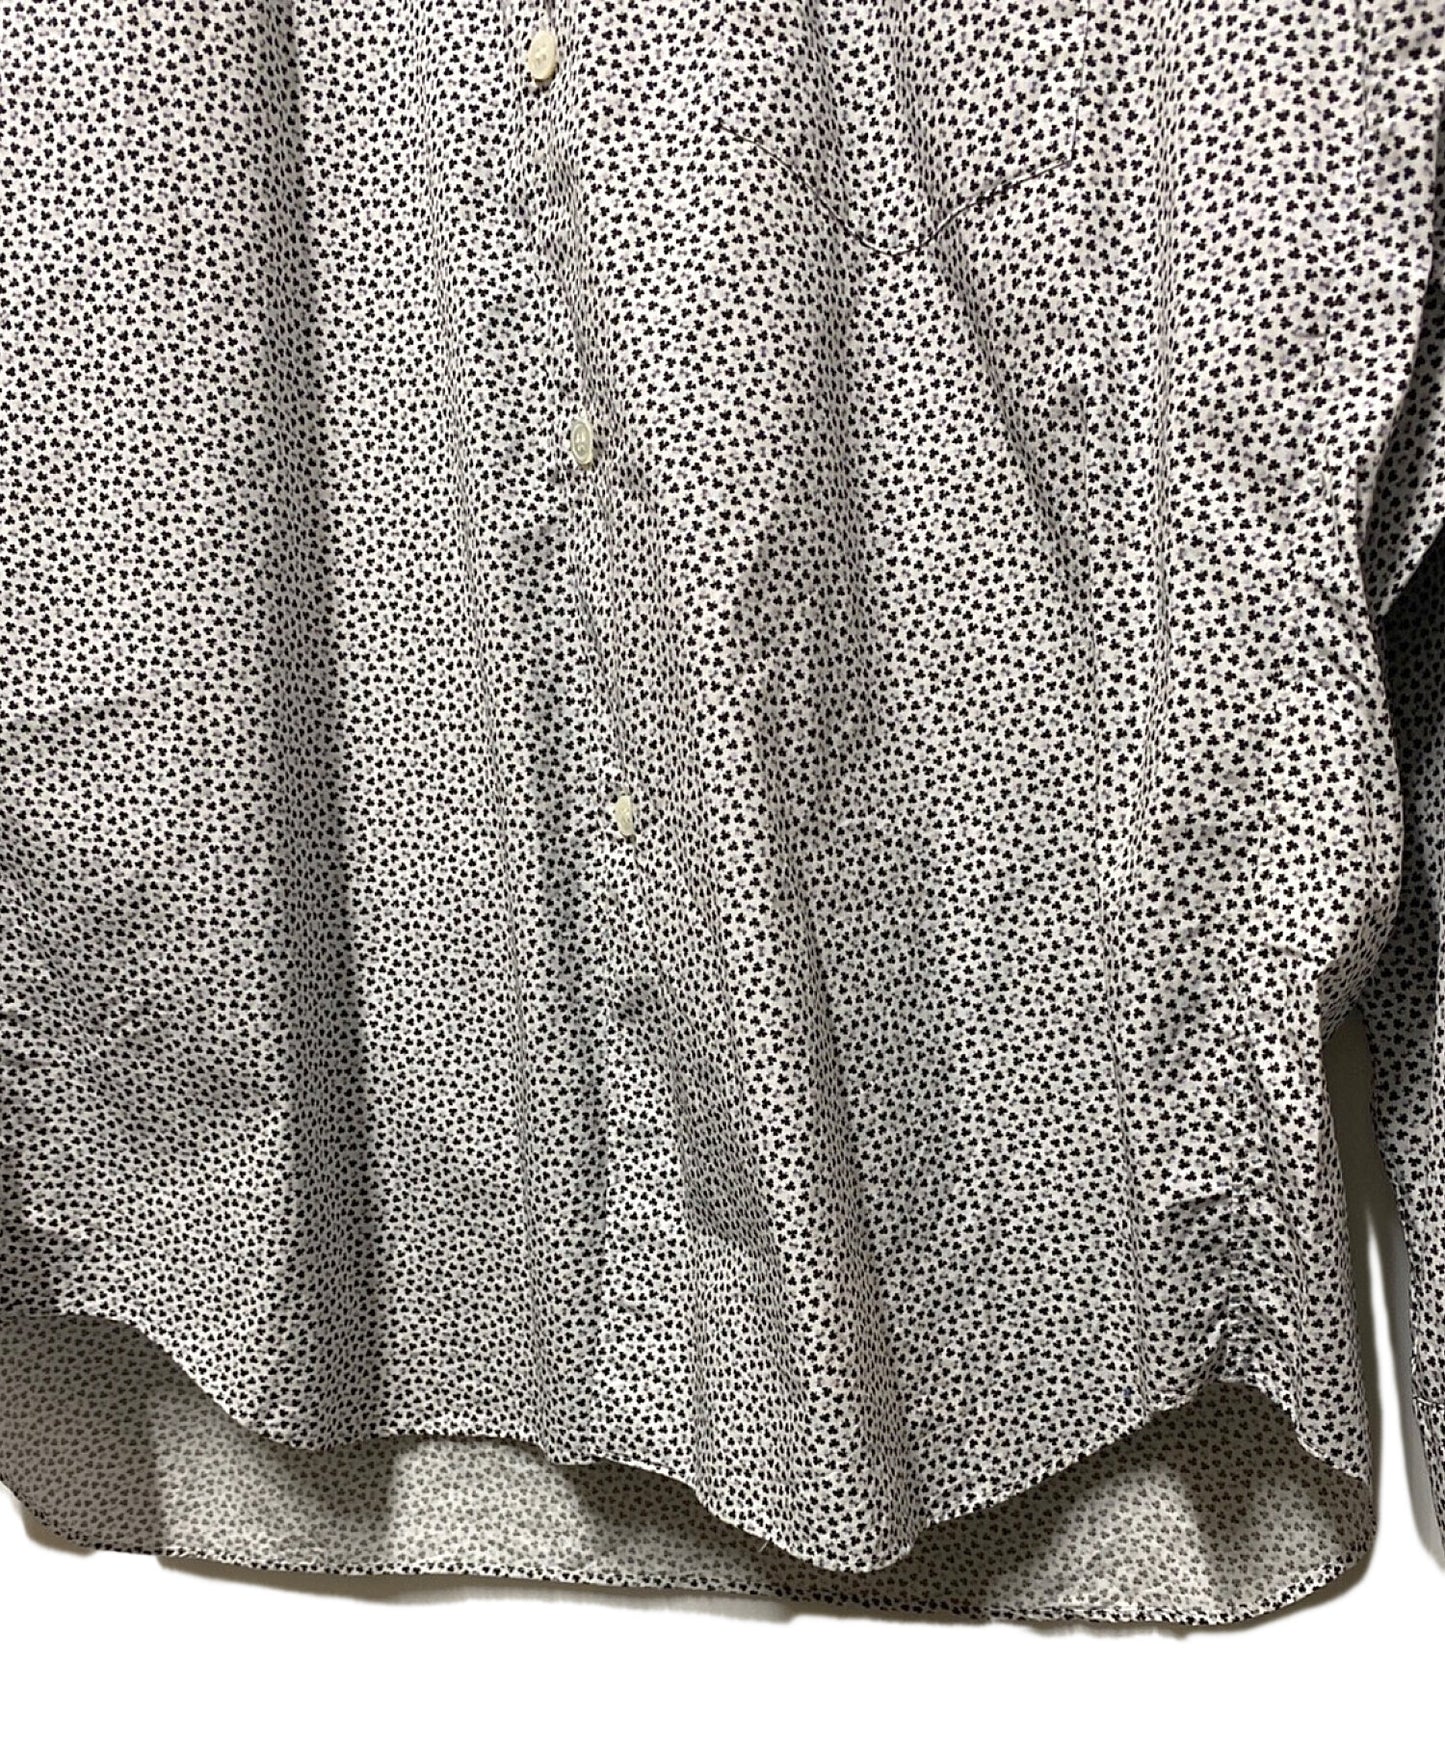 [Pre-owned] COMME des GARCONS HOMME PLUS Clover Frill Shirt PJ-B038